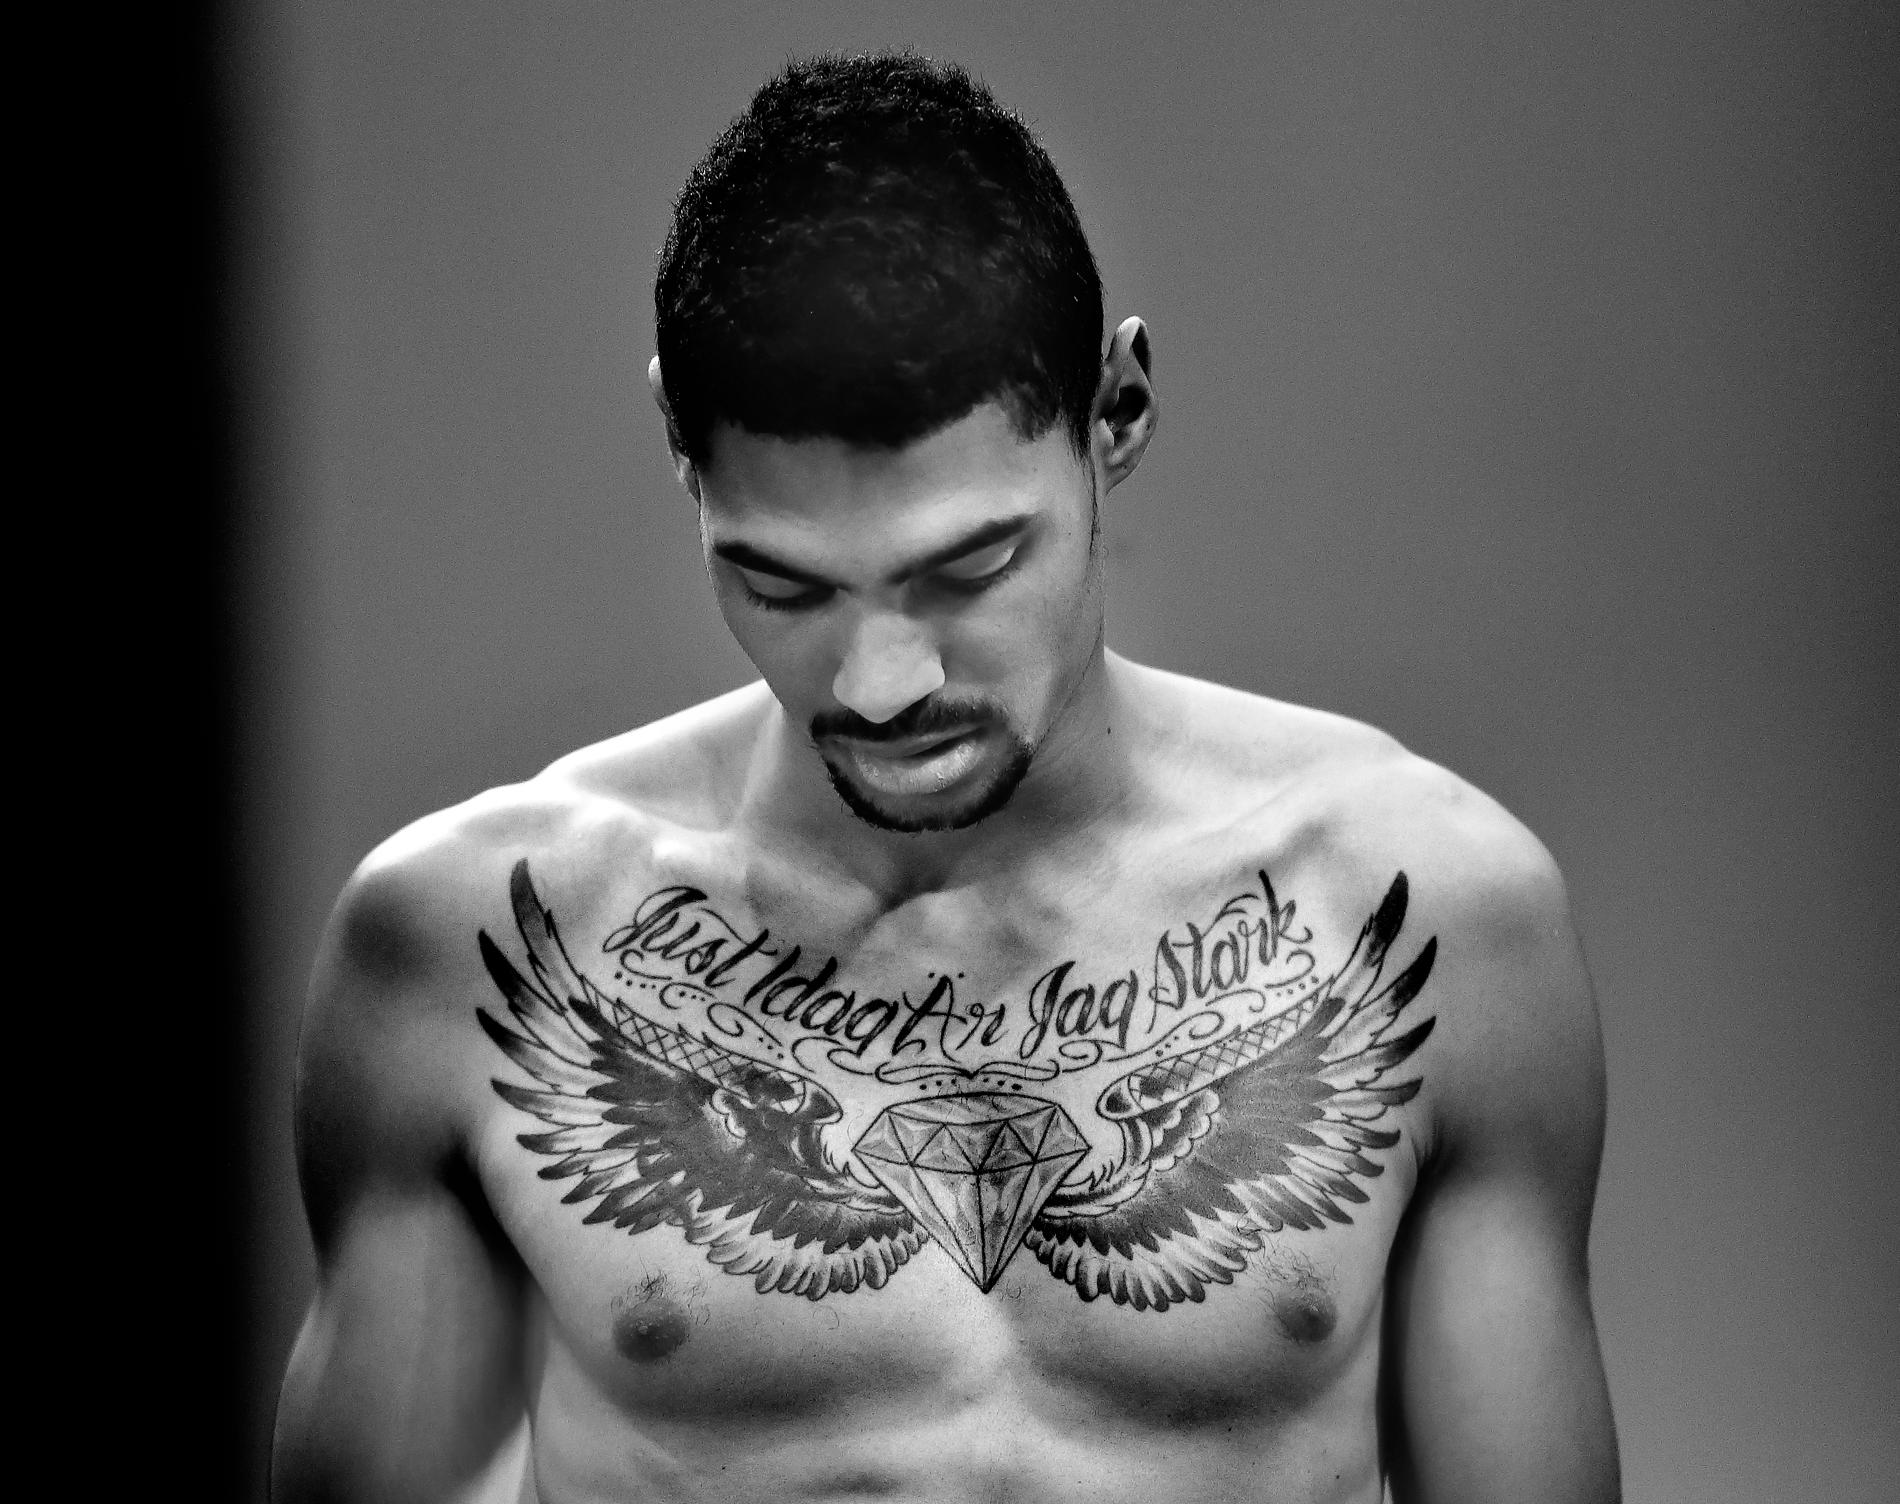 Michel Tornéus visar upp sin tatuering med orden ”just idag är jag stark”